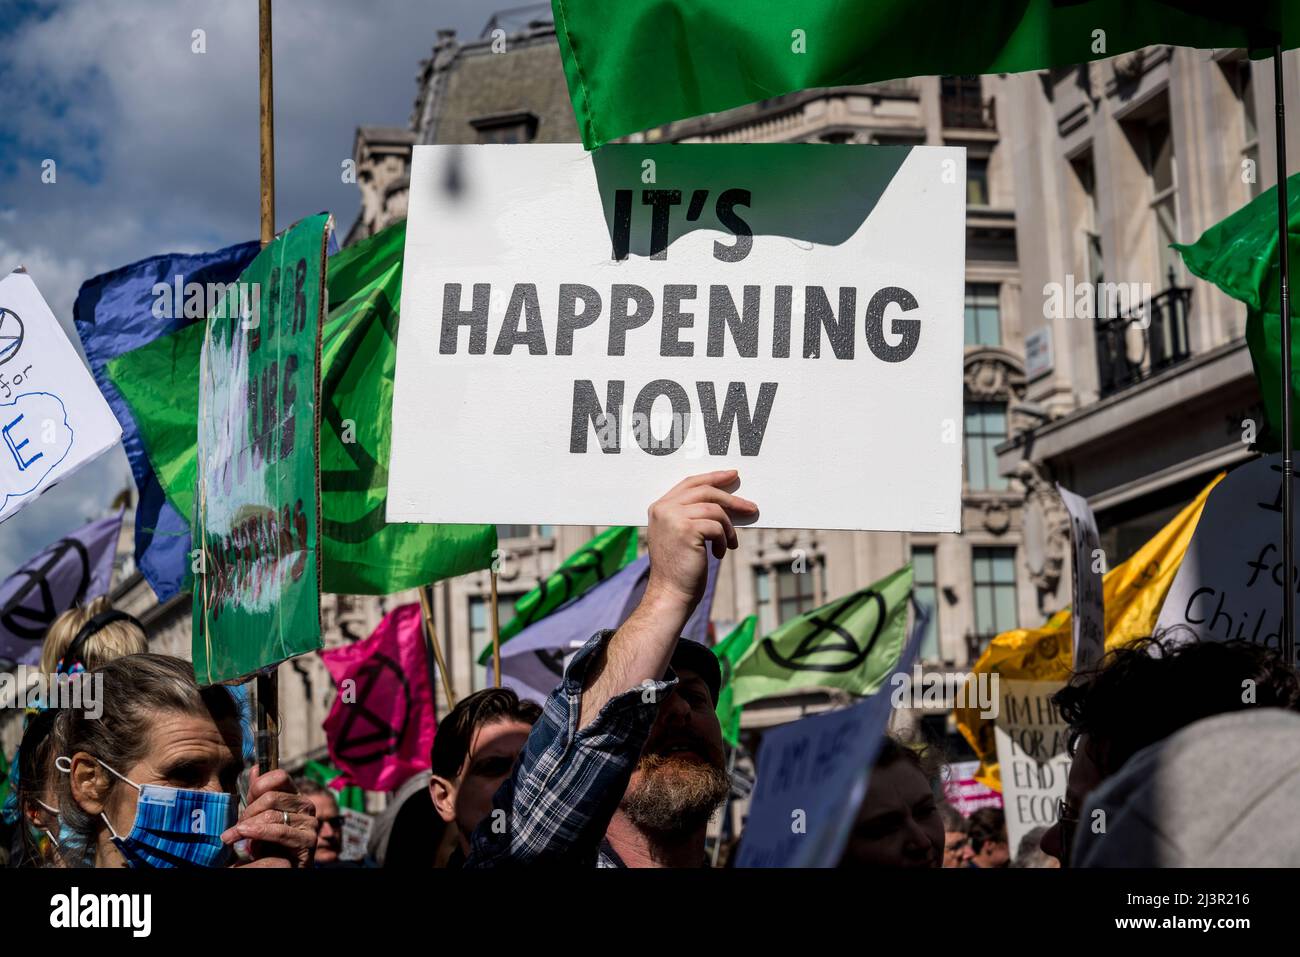 Sta accadendo ora placard, non saremo spettatori, una protesta della ribellione di estinzione che combatte per la giustizia climatica, nel centro di Londra, 09.04.2022, Londra, Inghilterra, REGNO UNITO Foto Stock